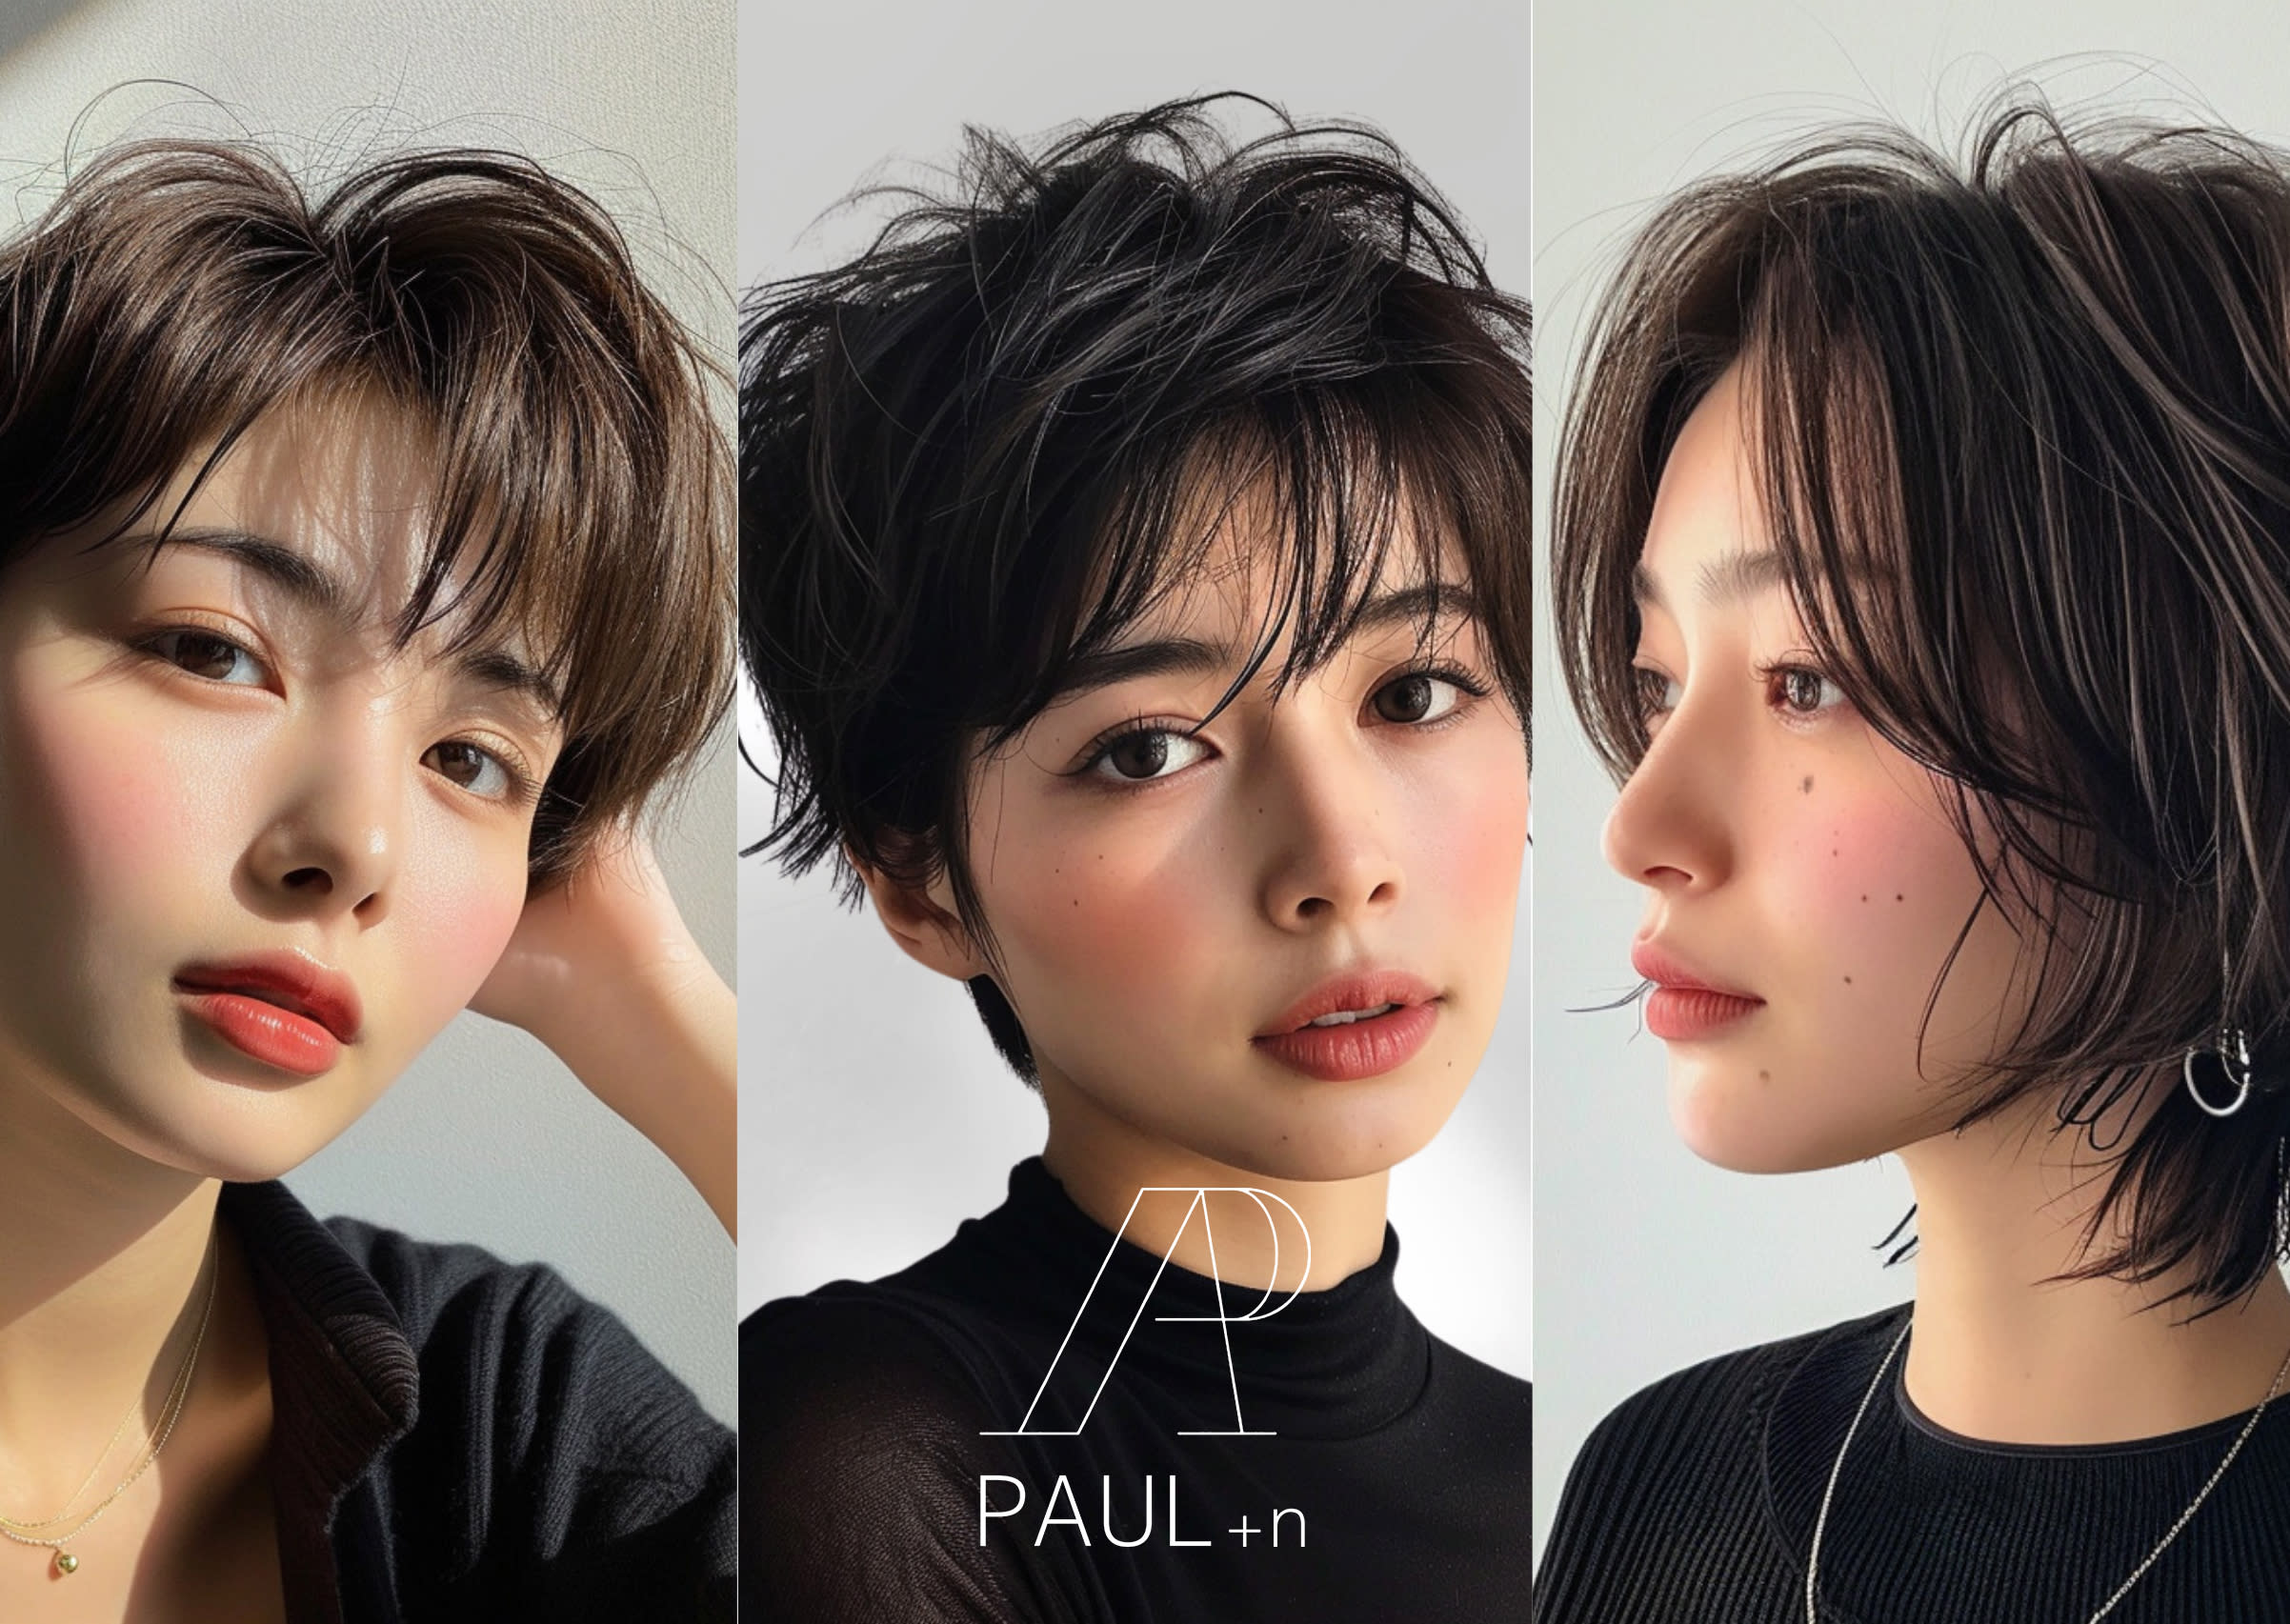 PAUL+nのアイキャッチ画像